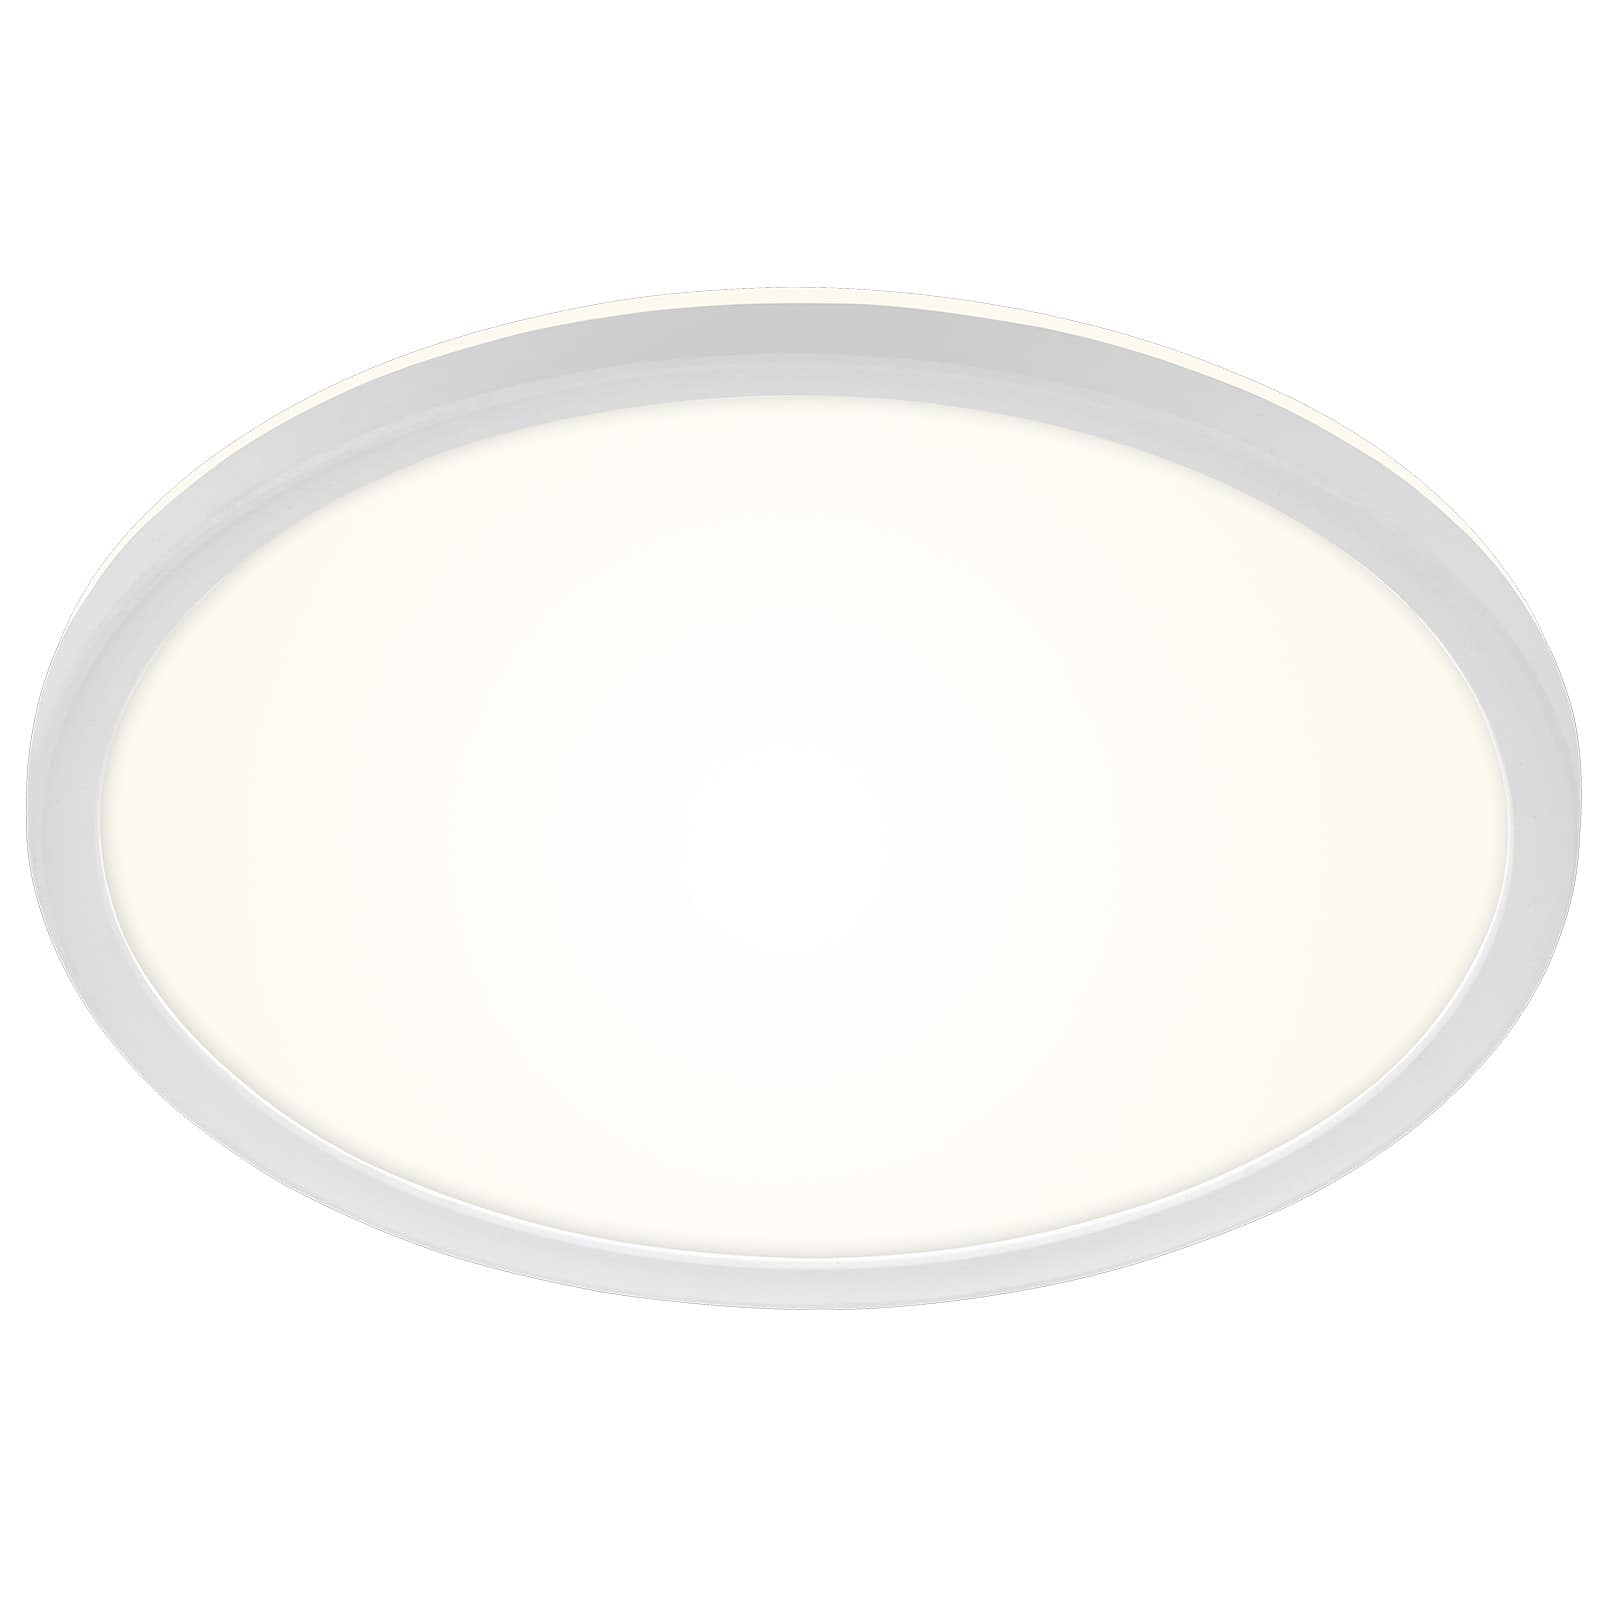 LED Ceiling light Ø 29 cm 19W 2400lm white